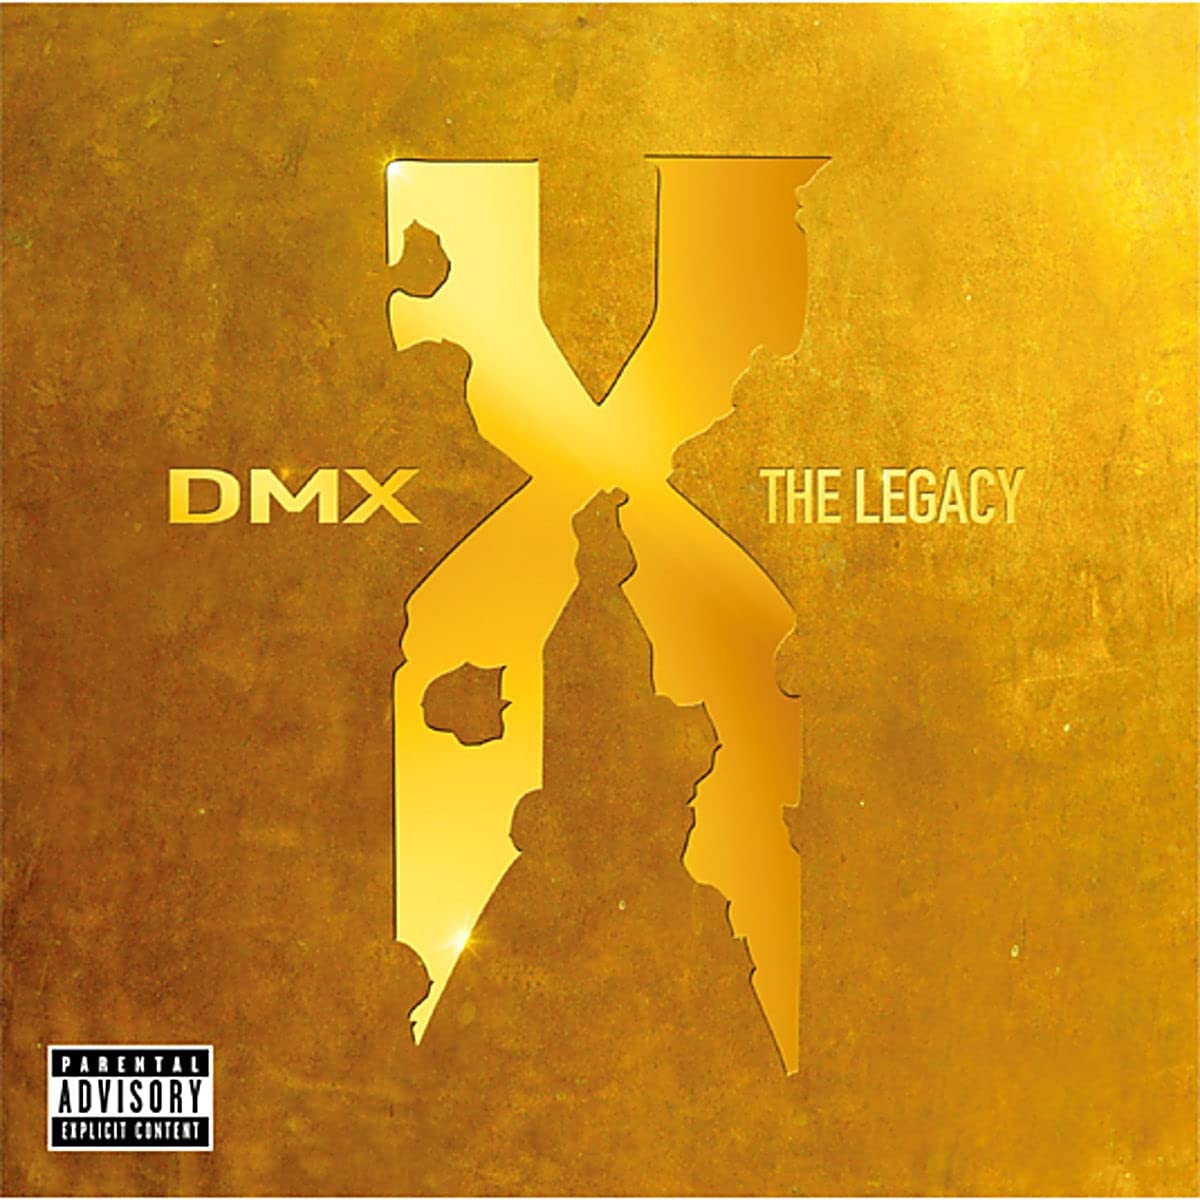 DMX "The Legacy" 2x12" Vinyl